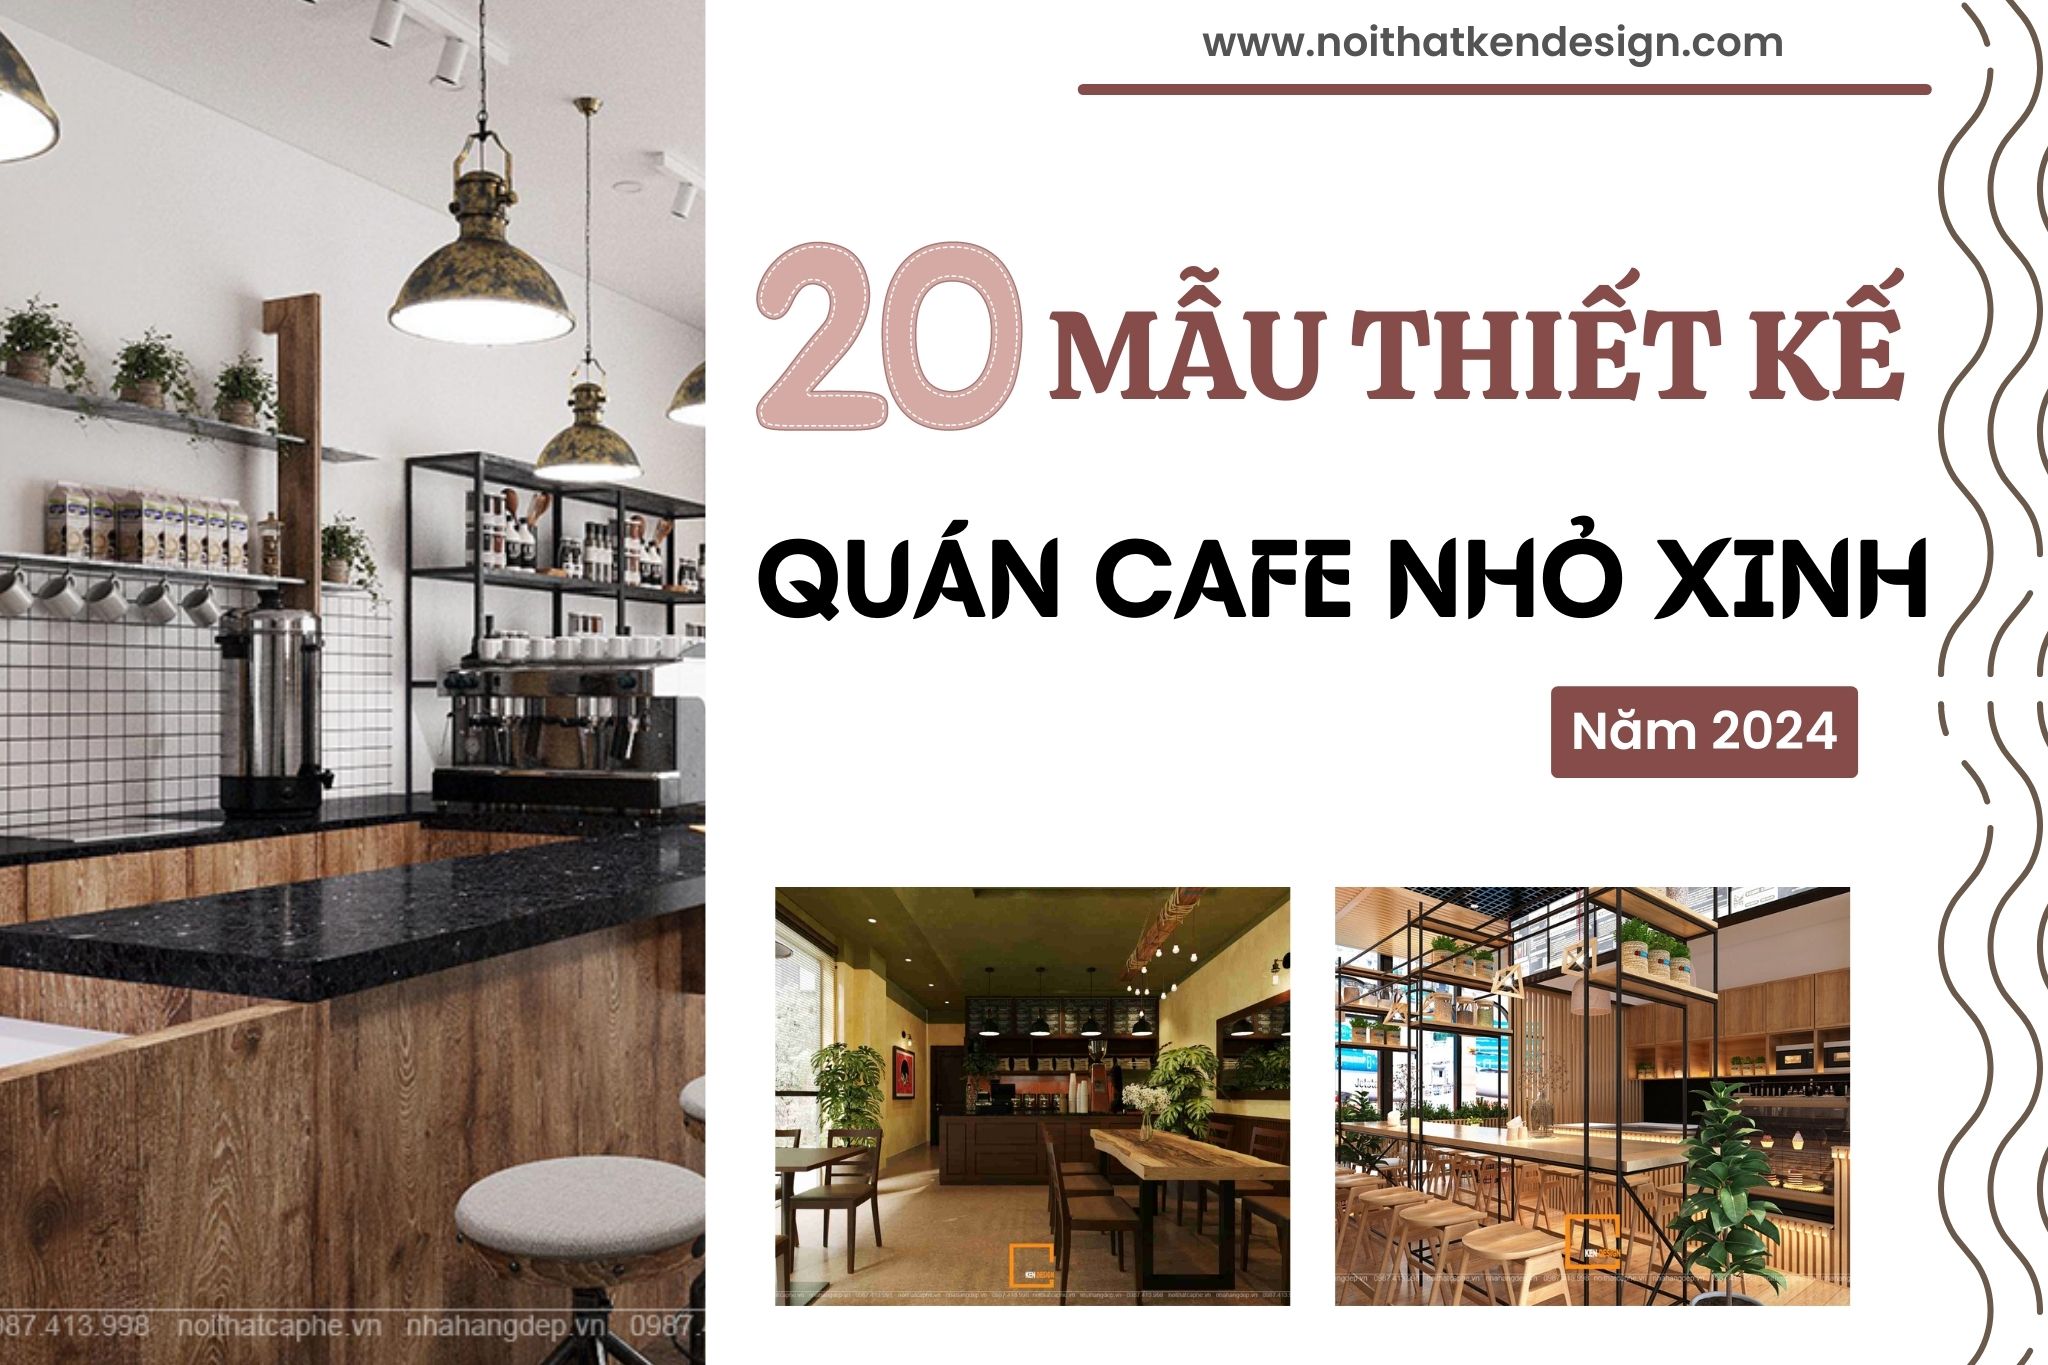 Điểm danh top 20 mẫu thiết kế quán cafe nhỏ xinh 2024